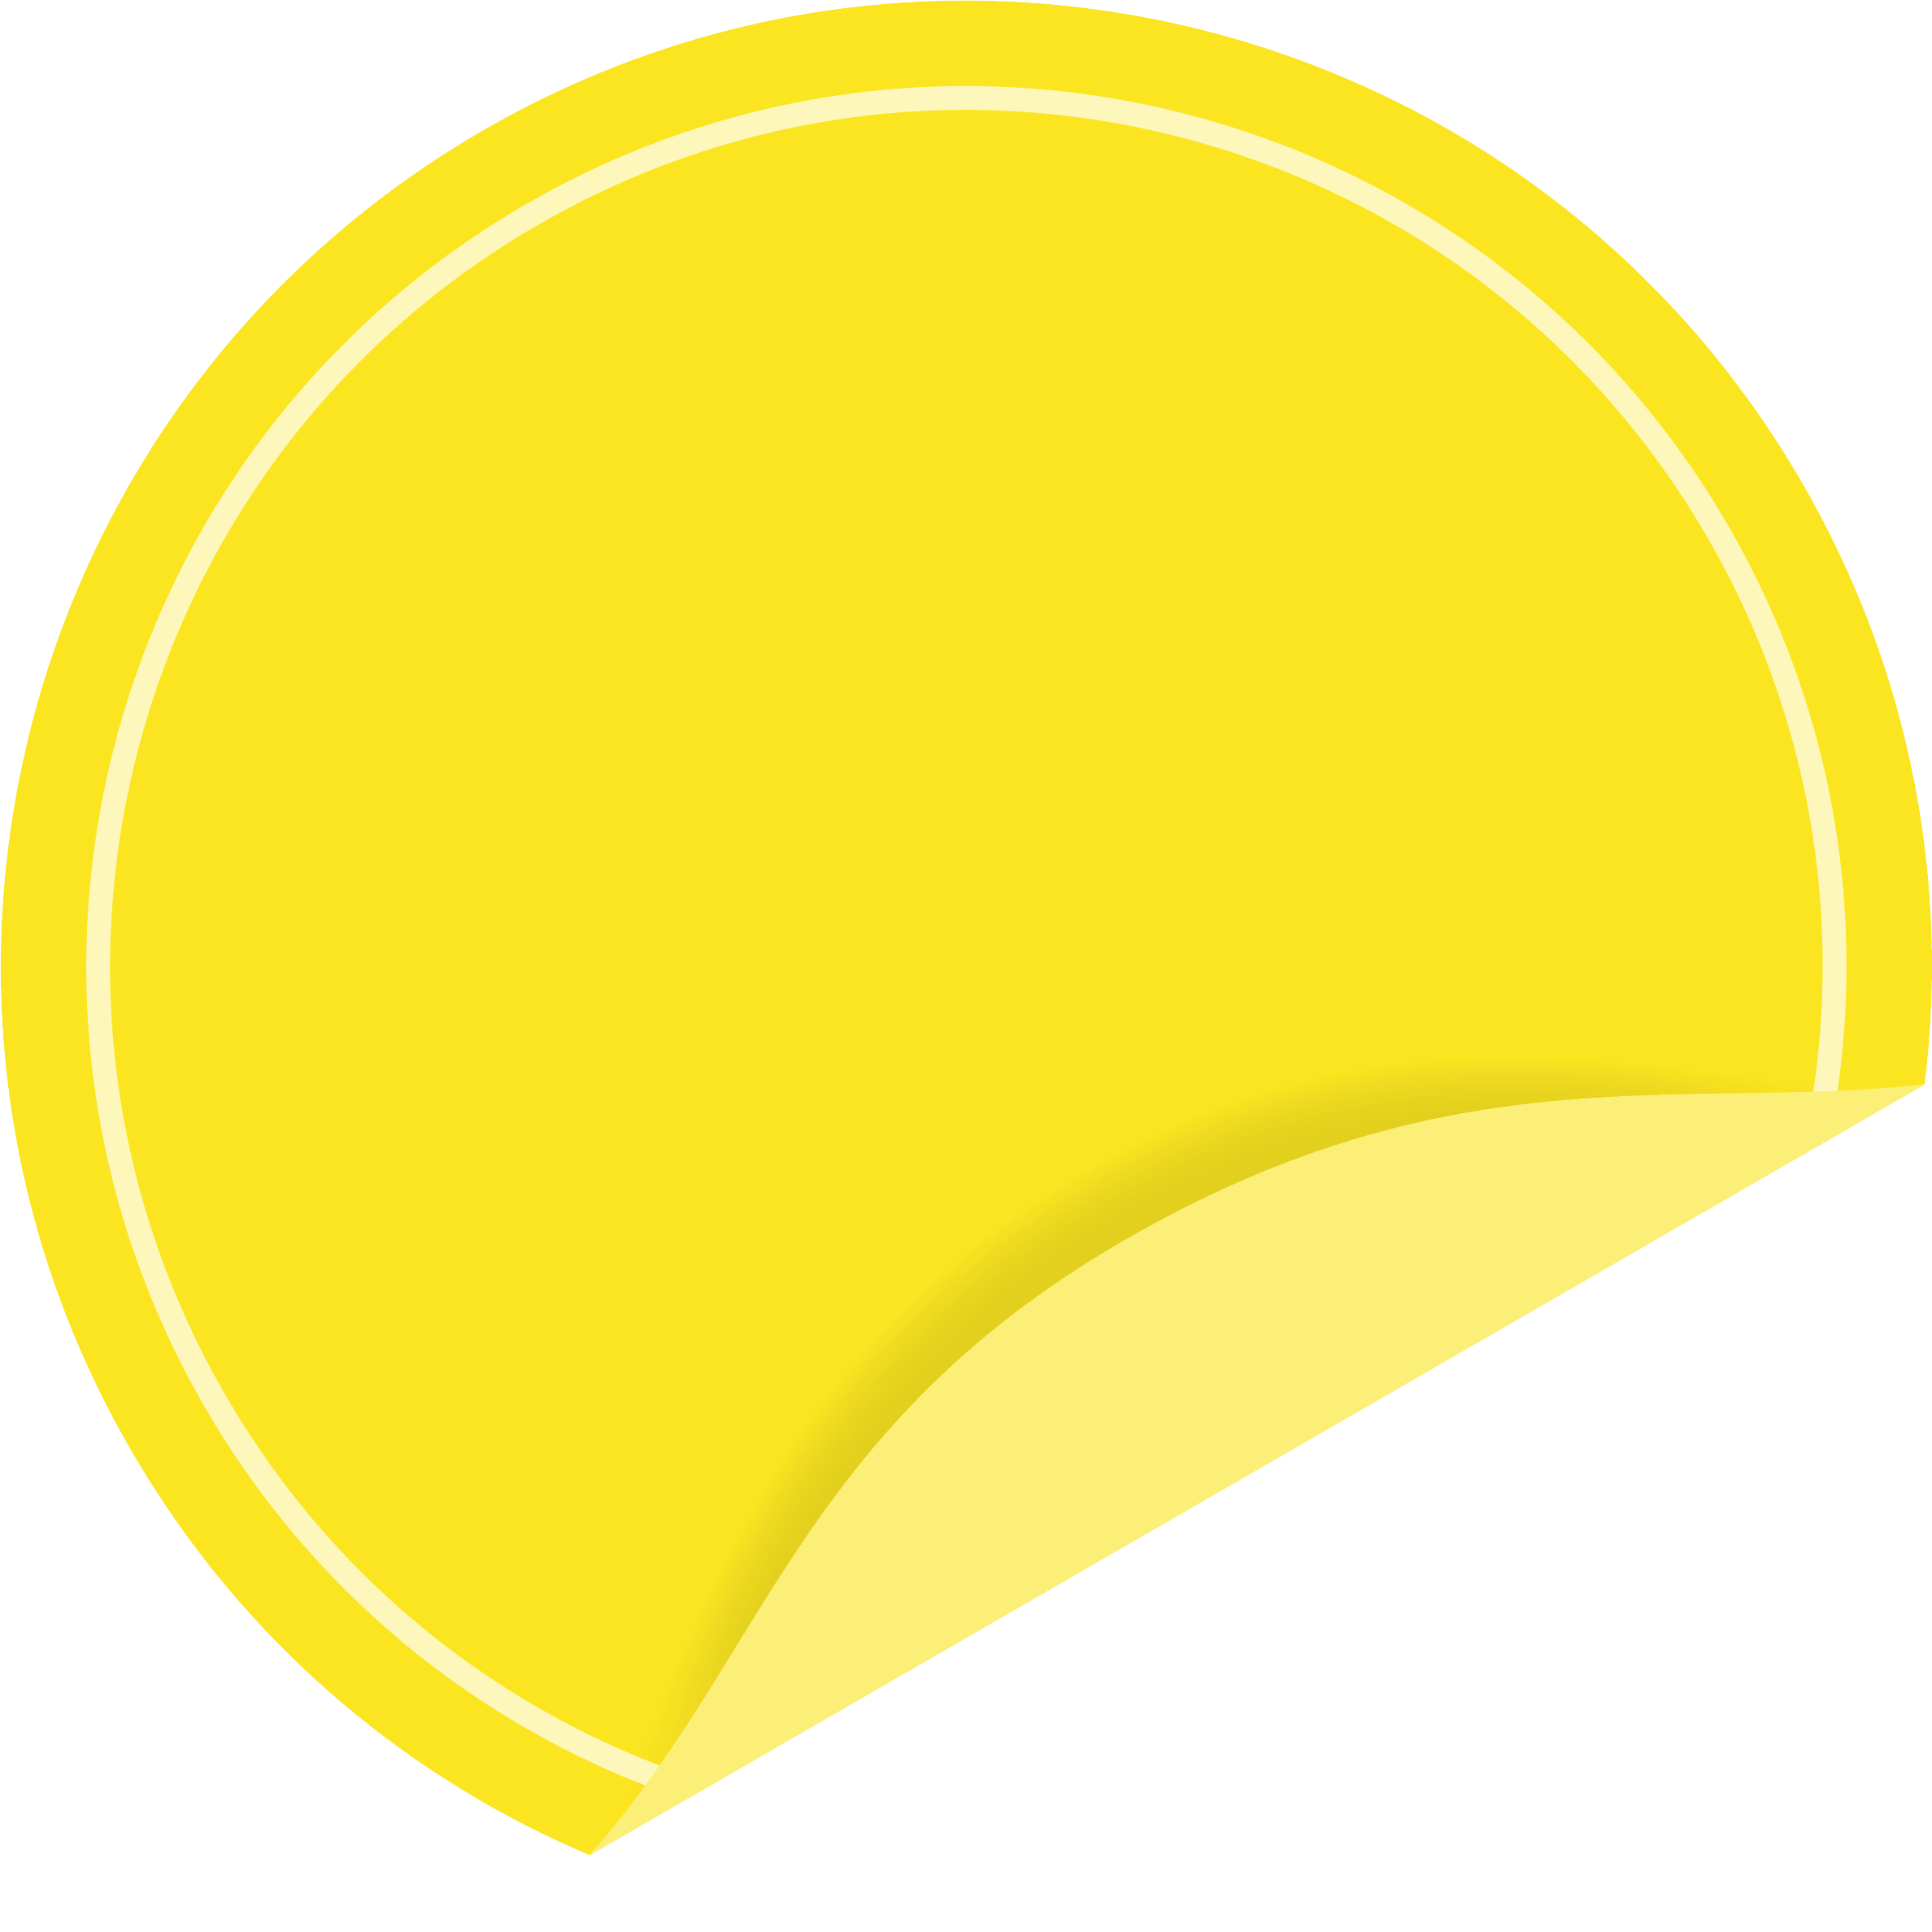 めくれた黄色い円形のシール ラベルのフレーム飾り枠 イラスト素材 超多くの無料かわいいイラスト素材